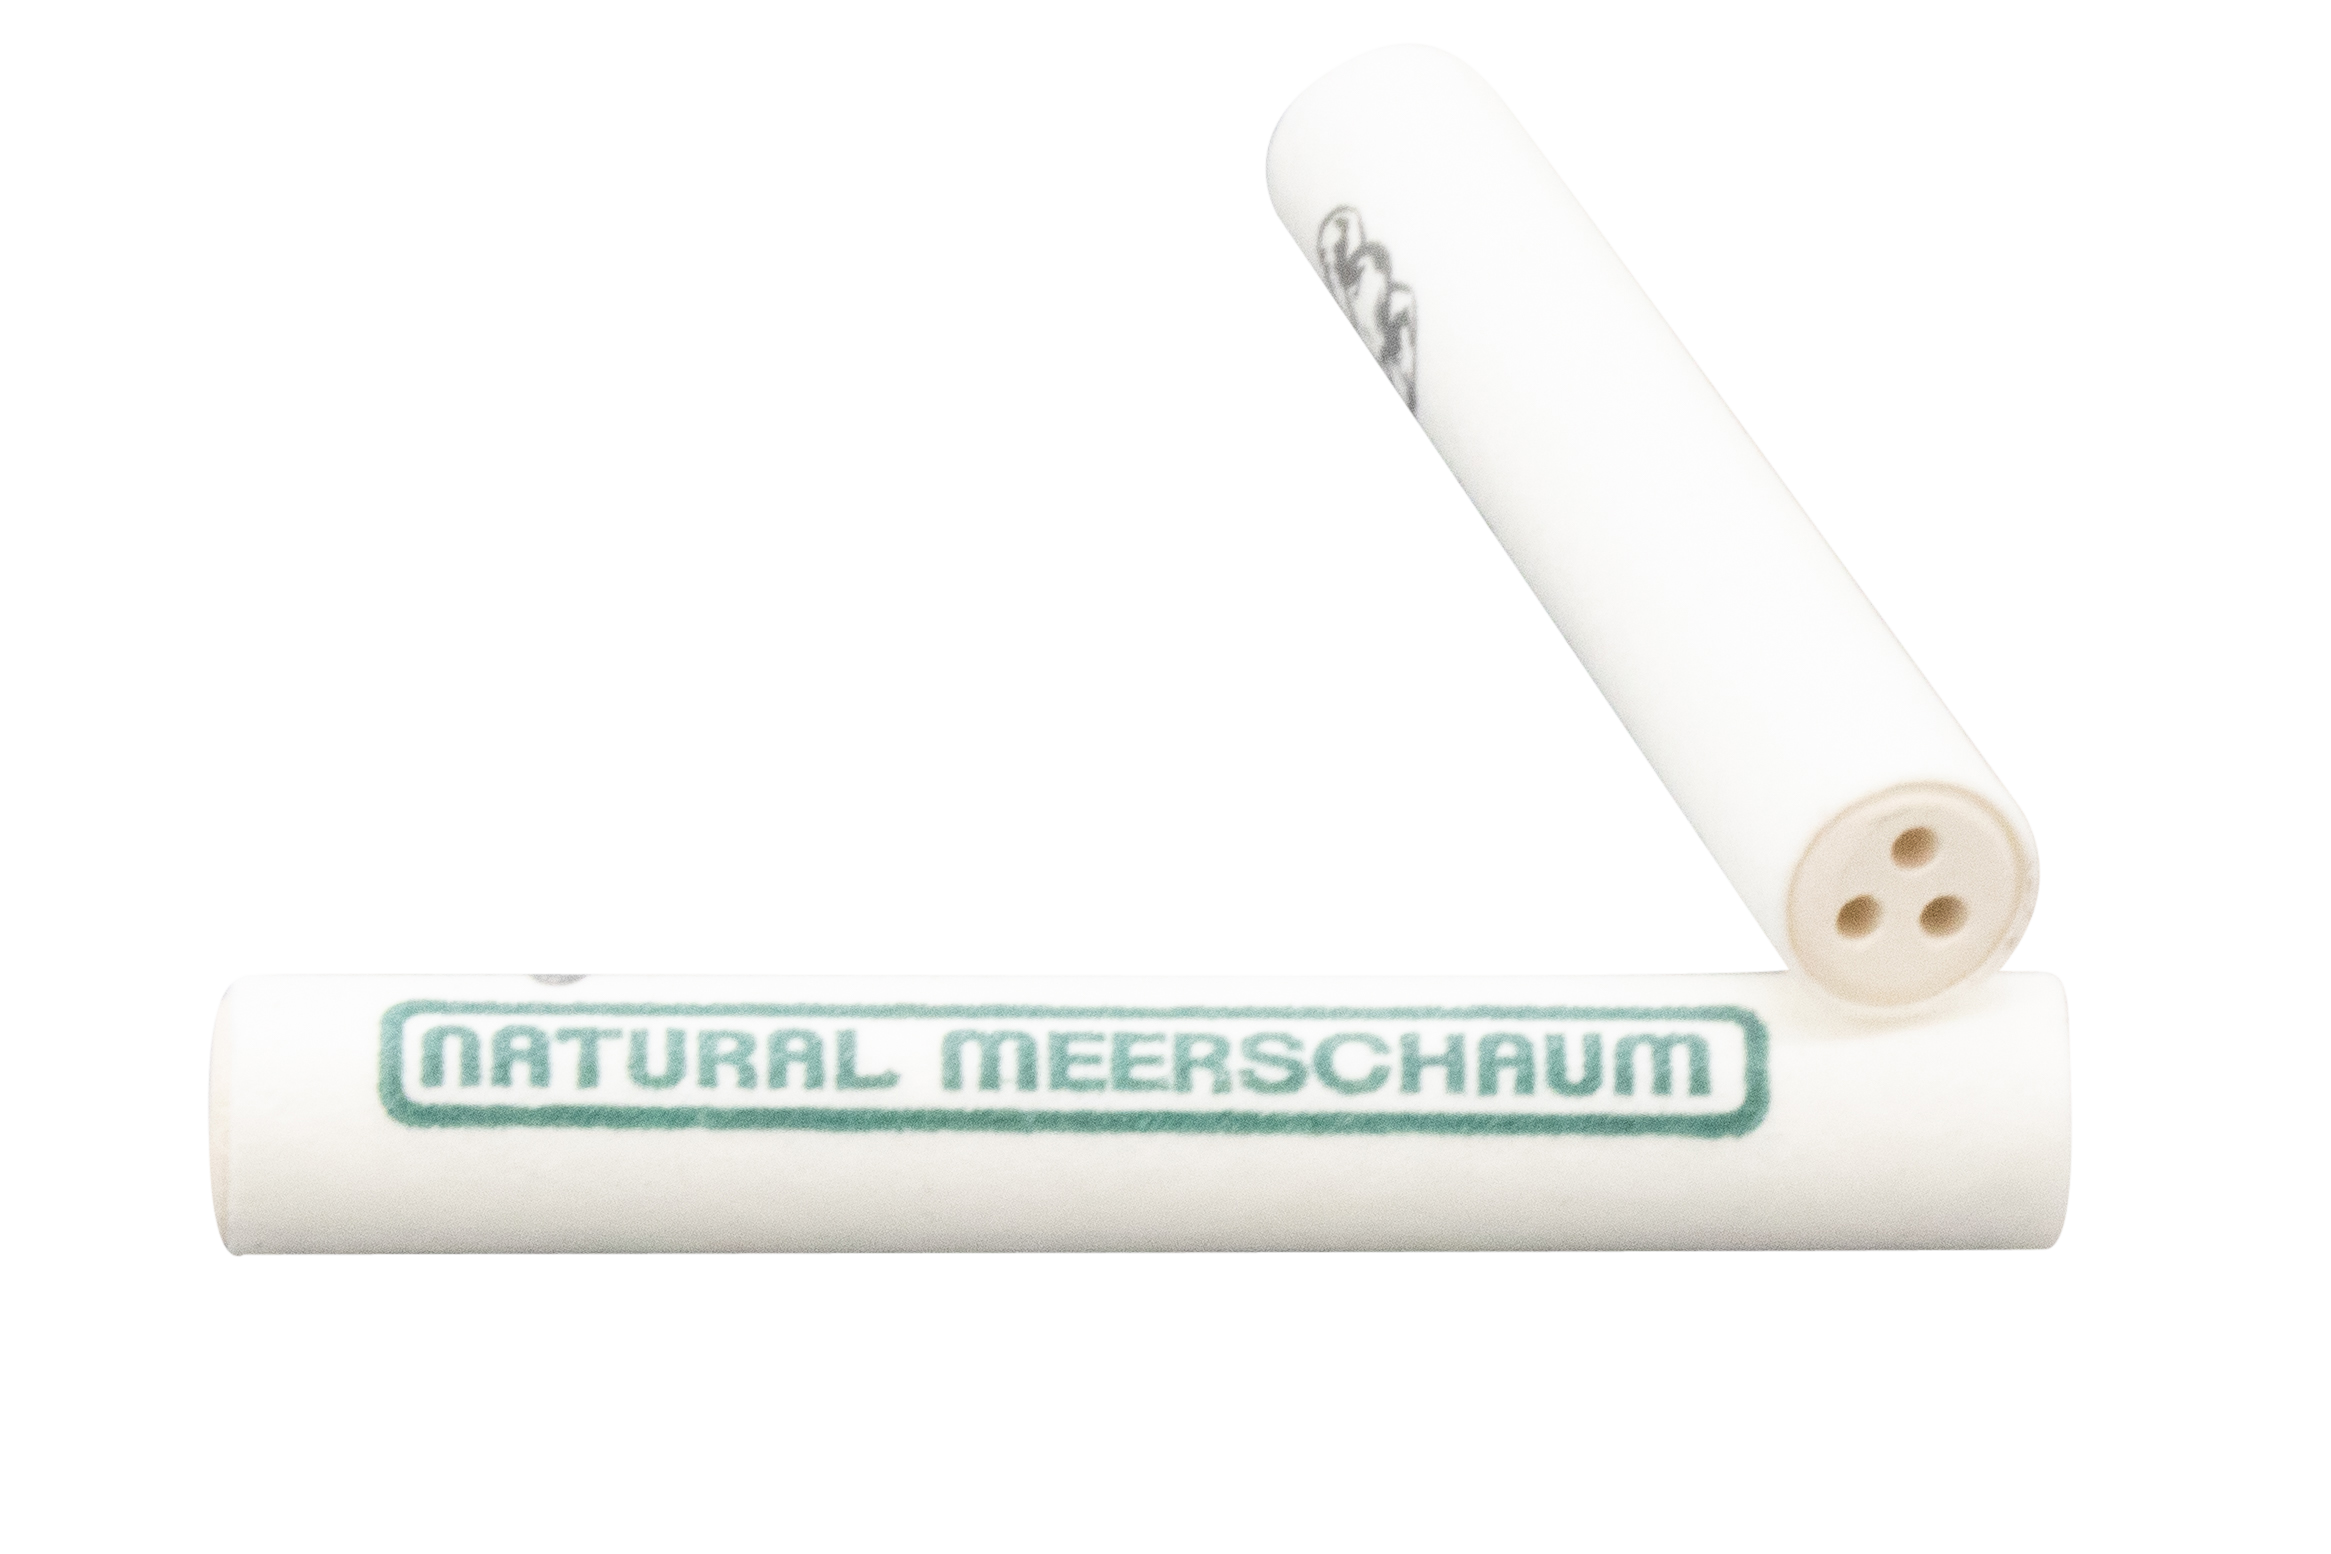 A White Elephant Meerschaum Filter